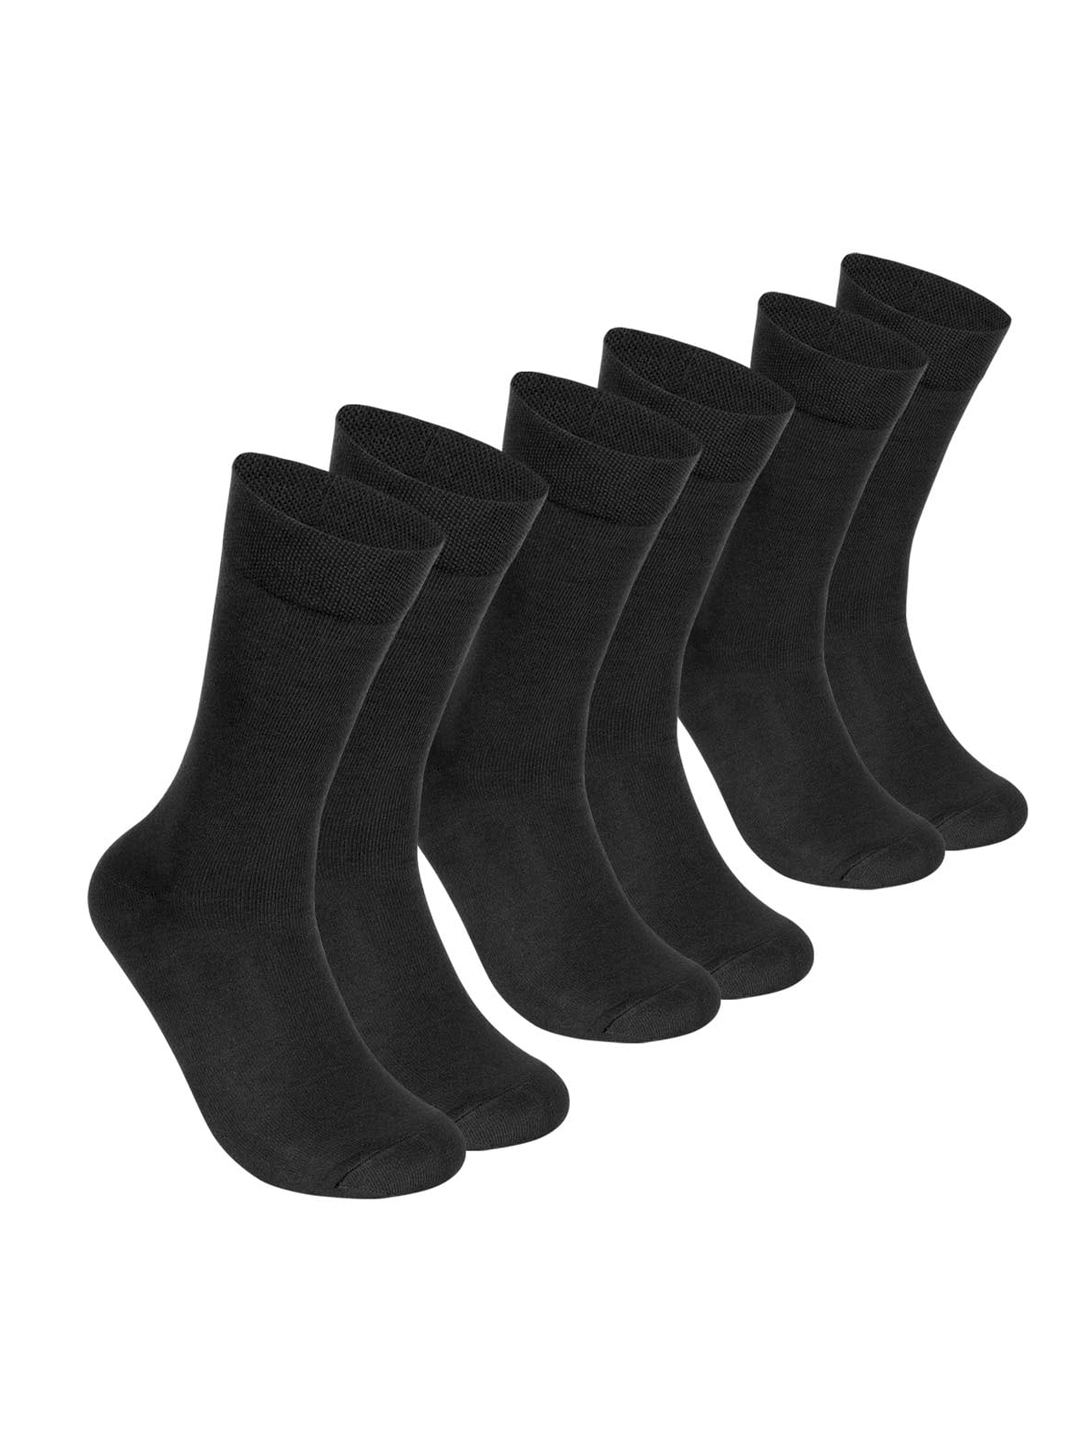 Supersox Men Pack of 3 Black Solid Calf Length Formal Socks